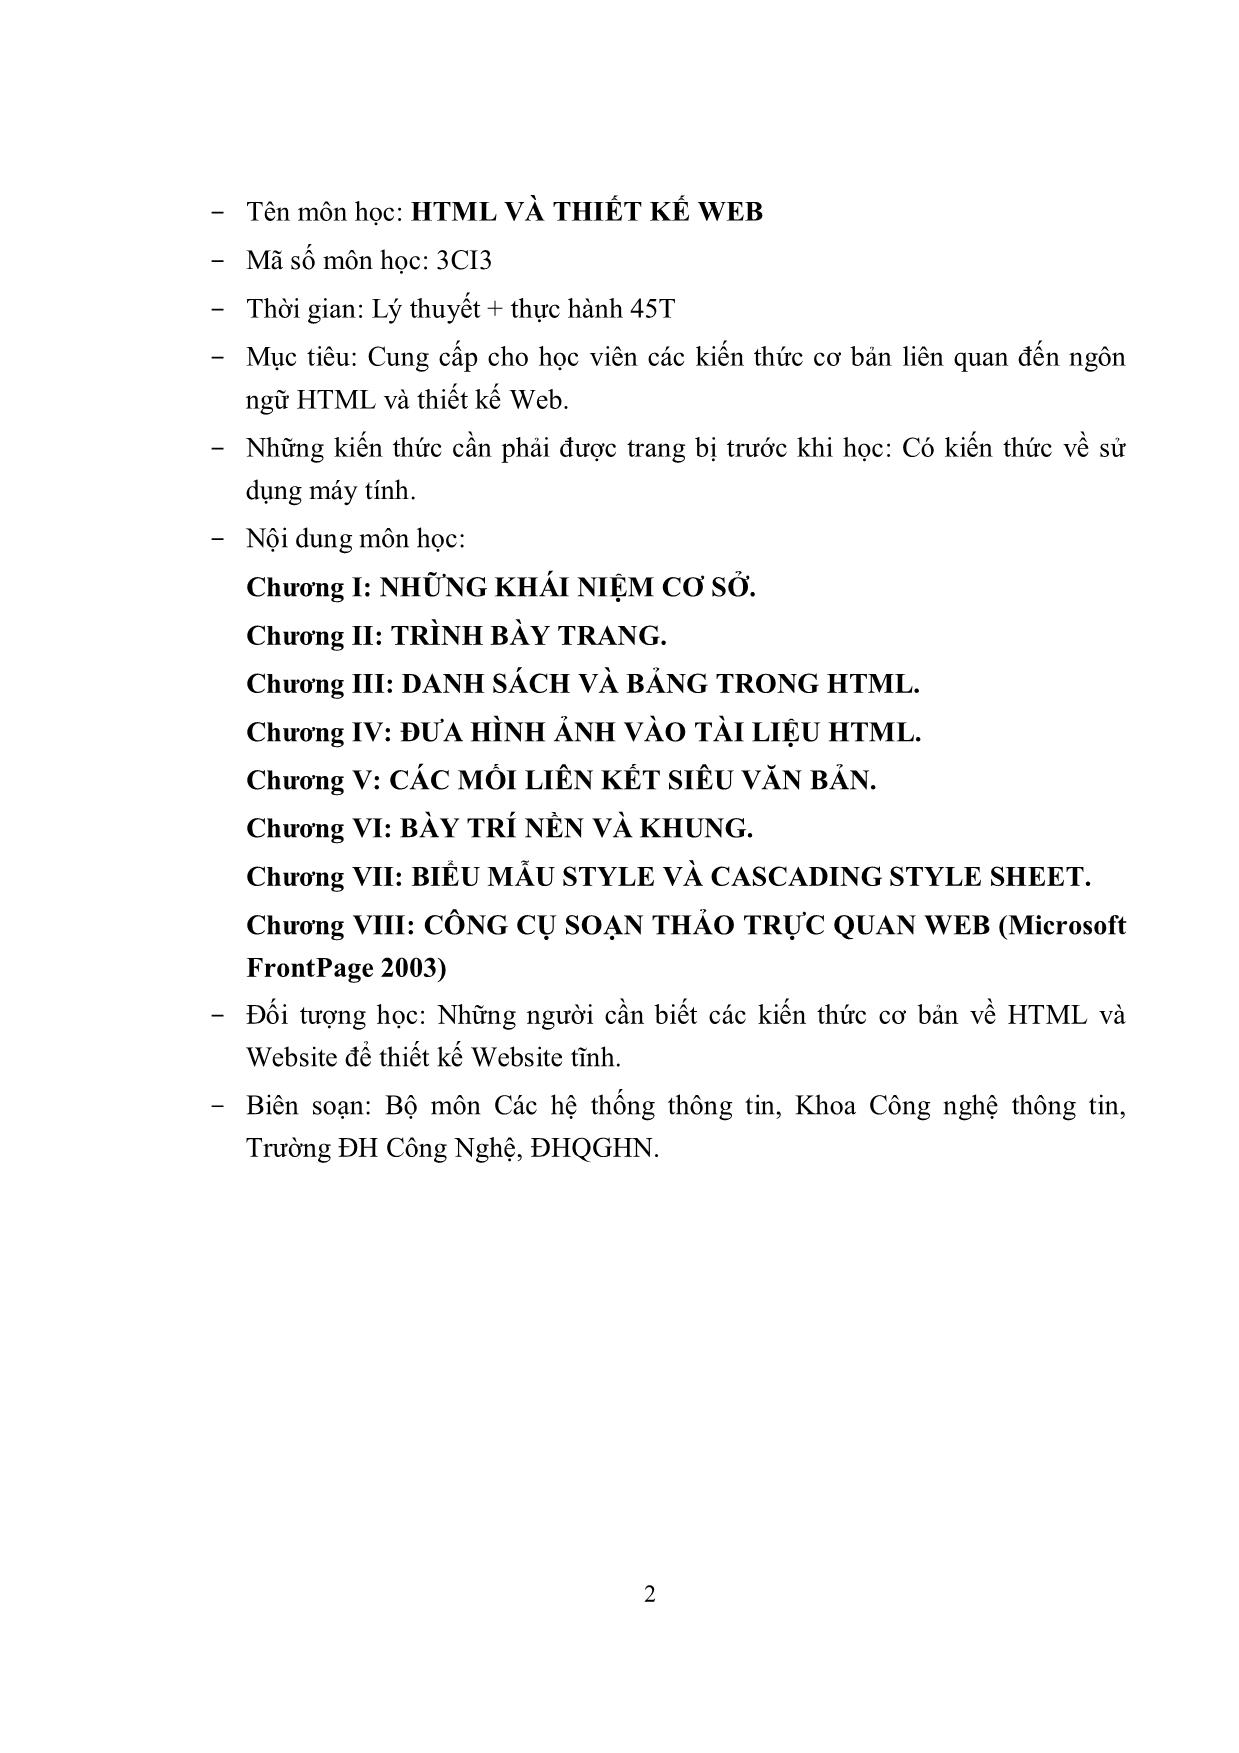 Giáo trình Ngôn ngữ siêu văn bản HTML (Phần 1) trang 3